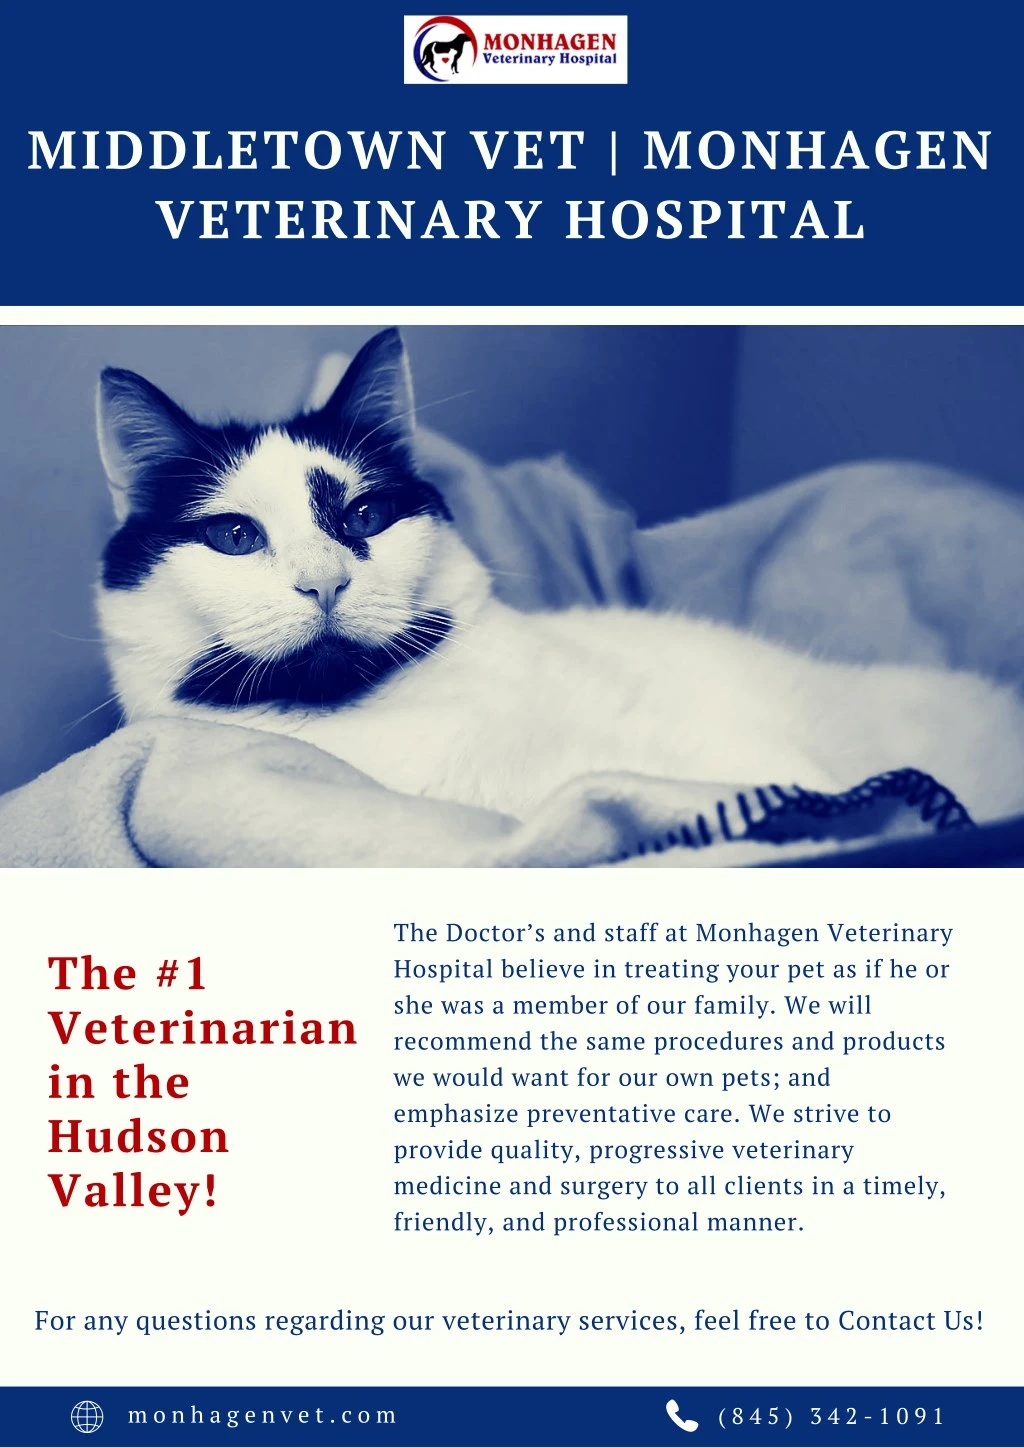 middletown vet monhagen veterinary hospital